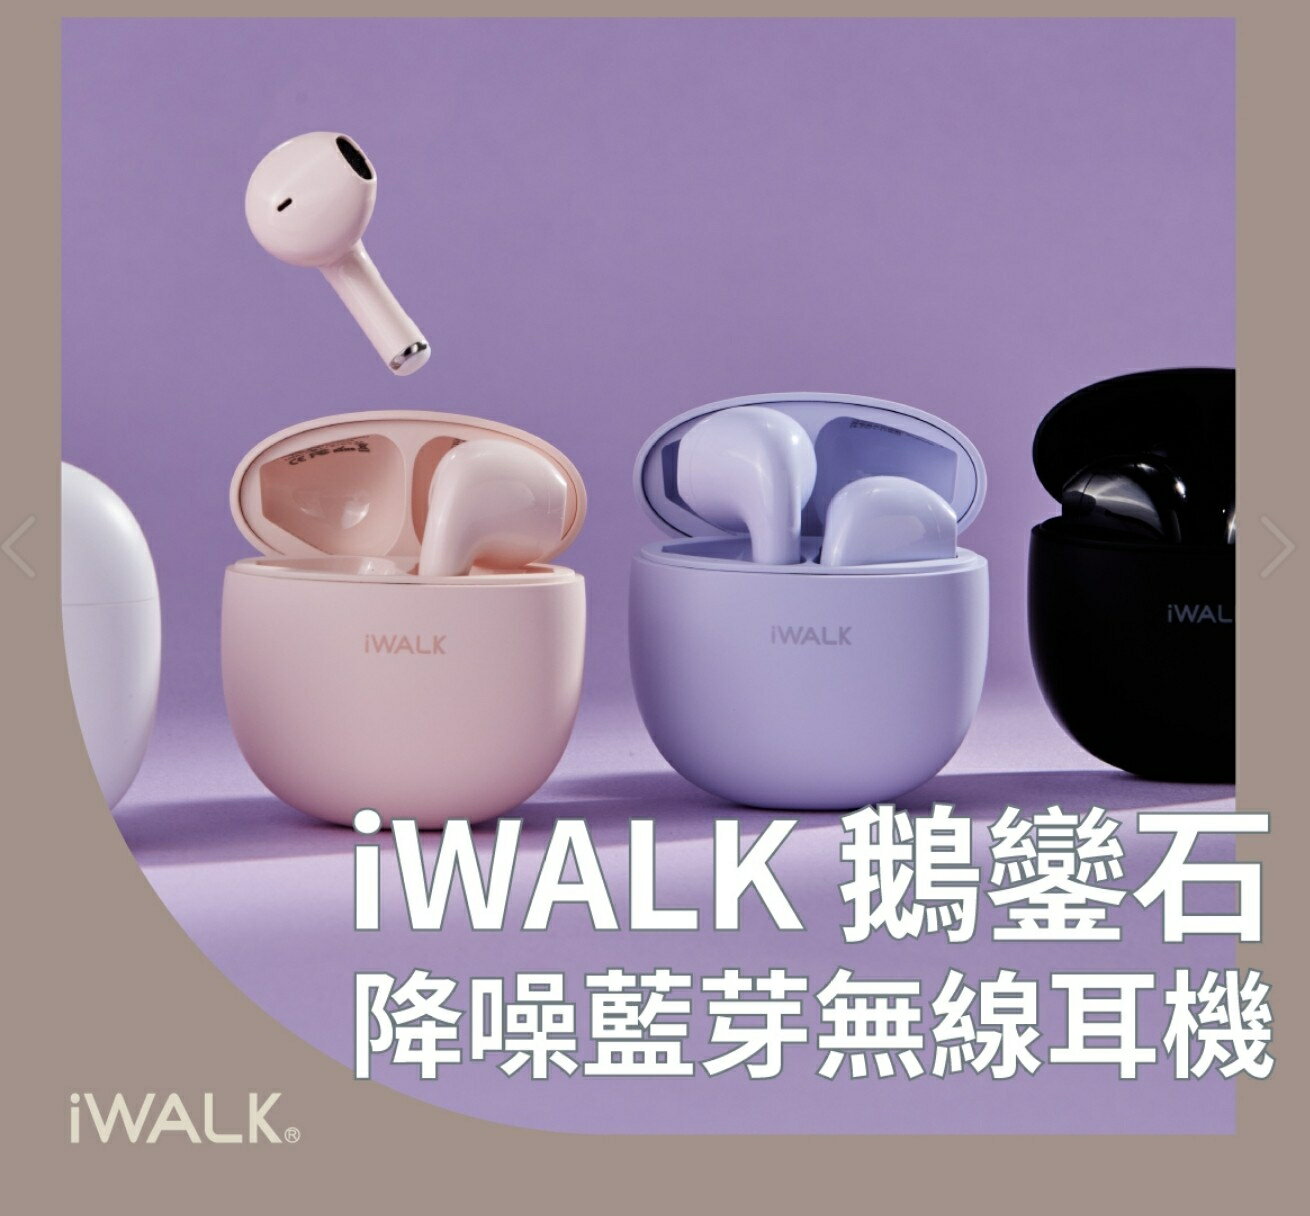 正版 台灣公司貨 iWALK 鵝卵石 藍芽耳機